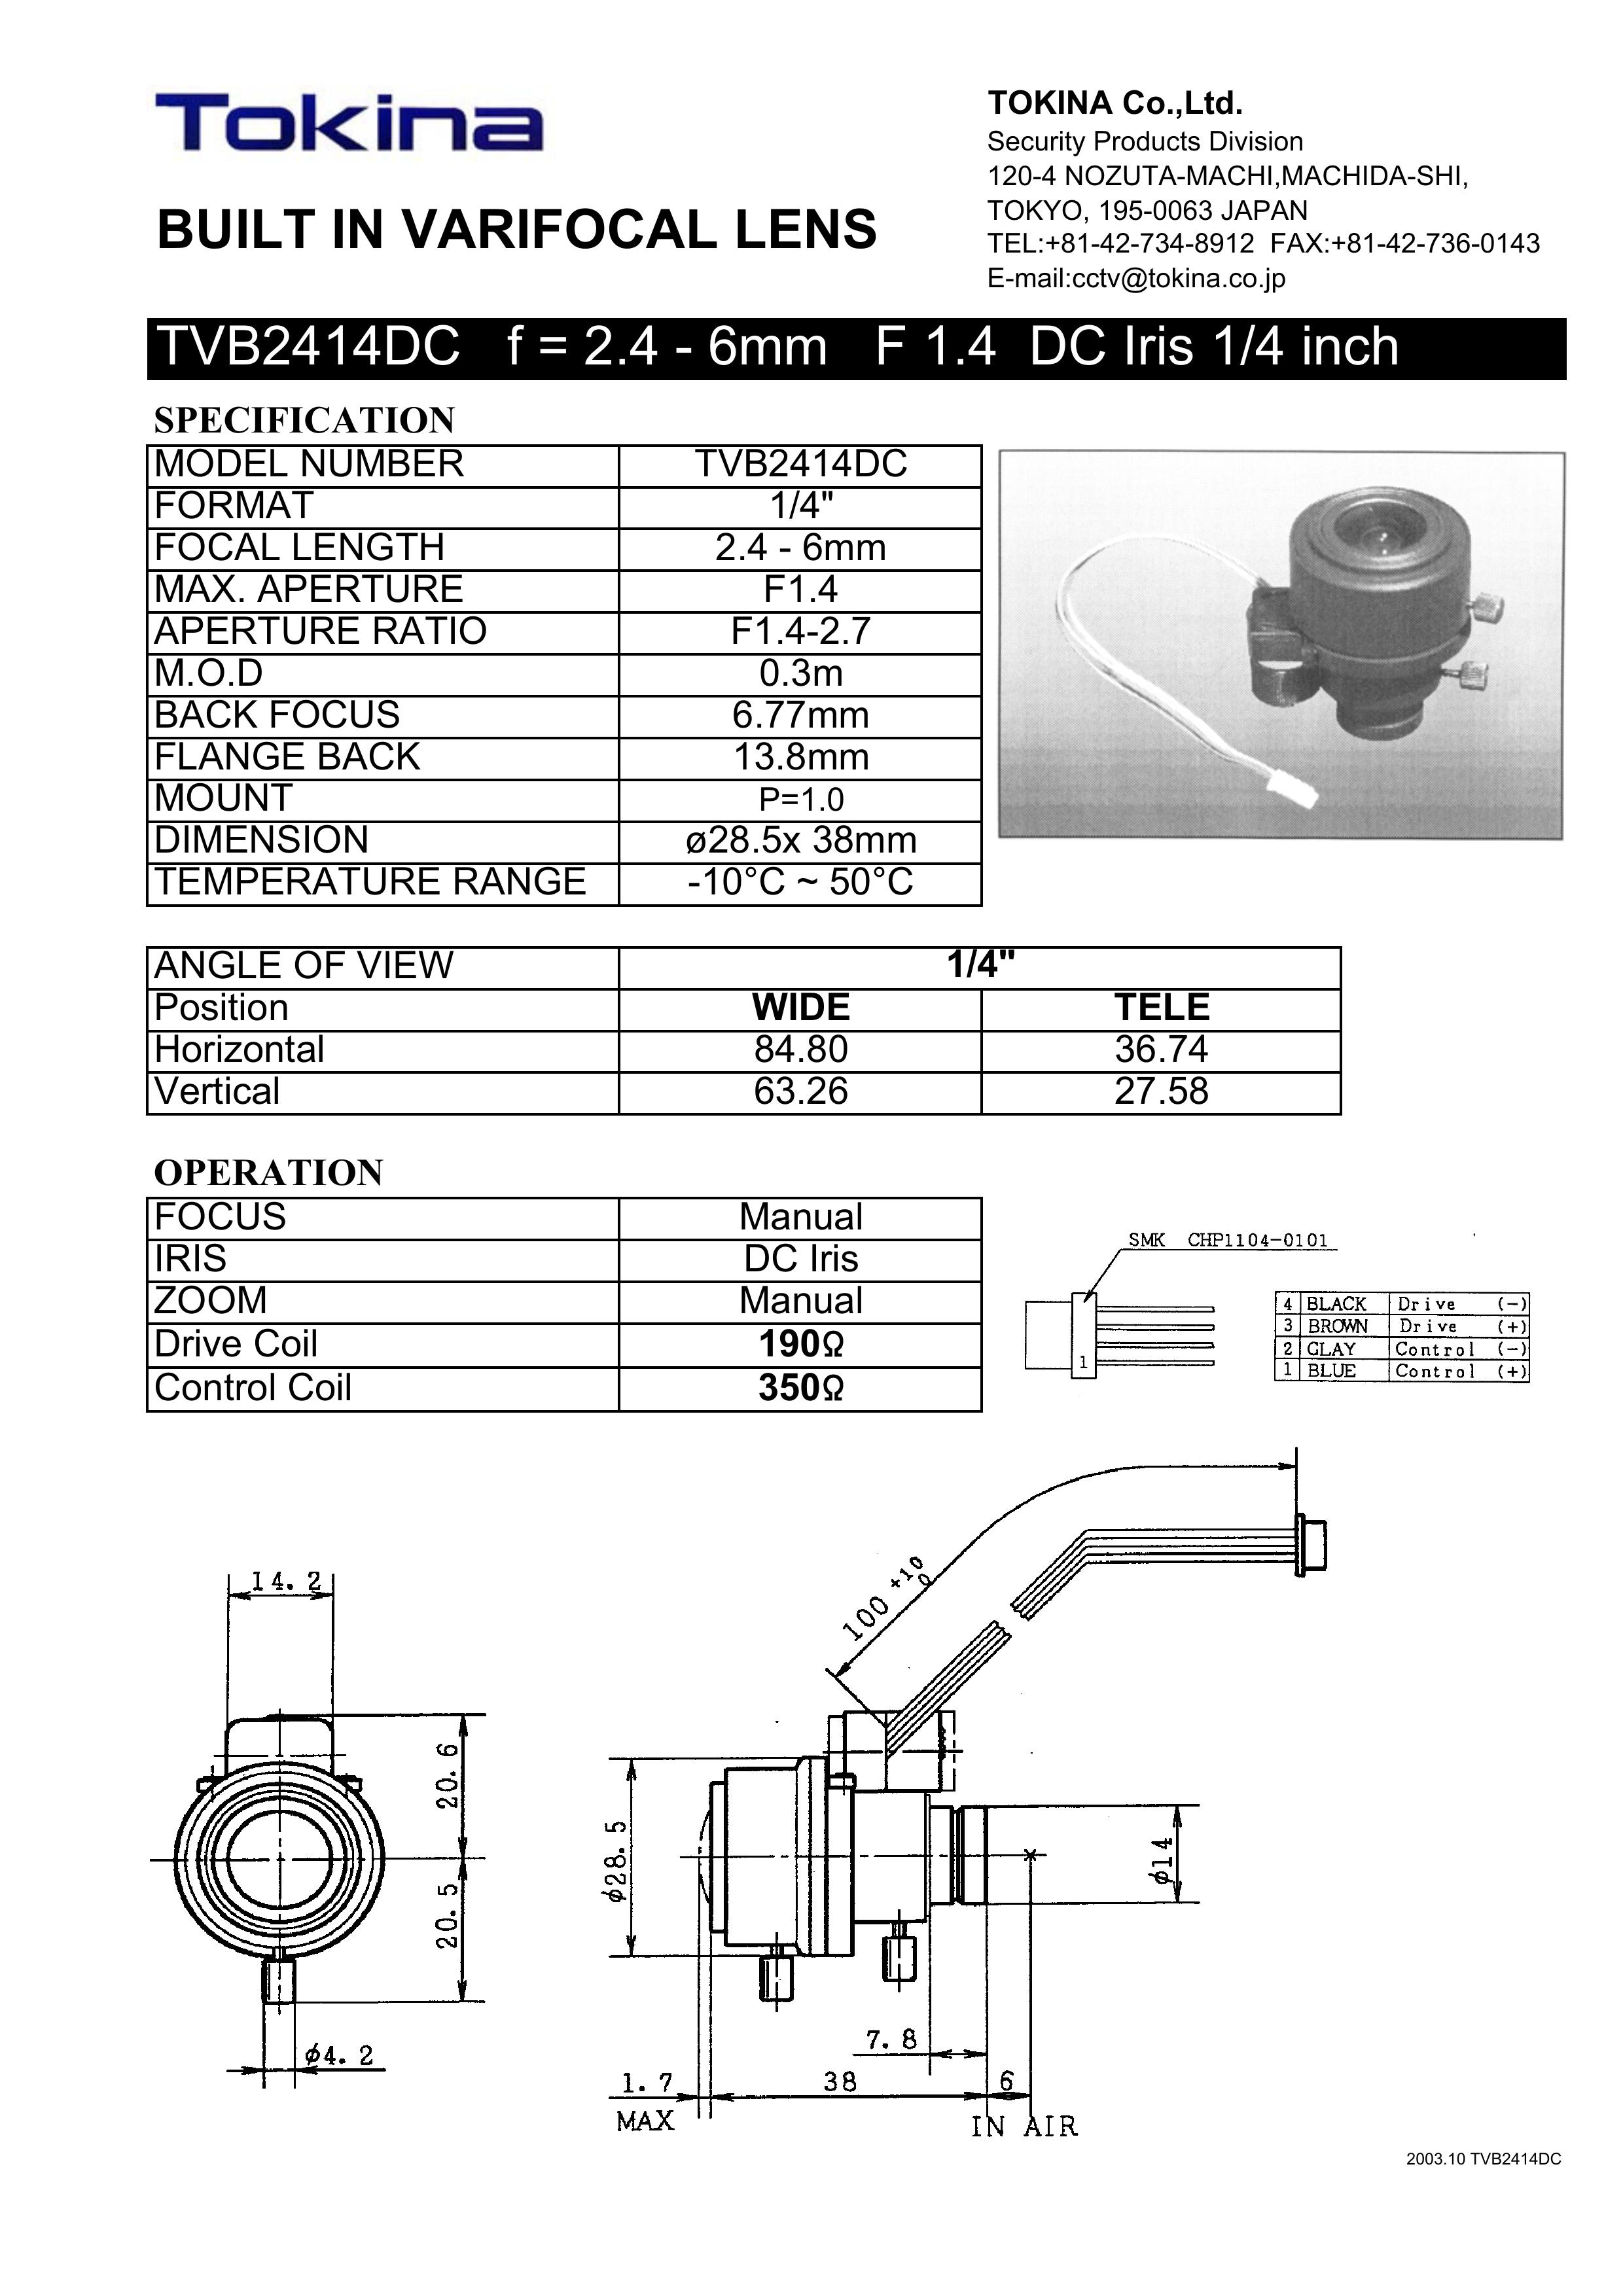 Tokina TVB2414DC Camera Accessories User Manual